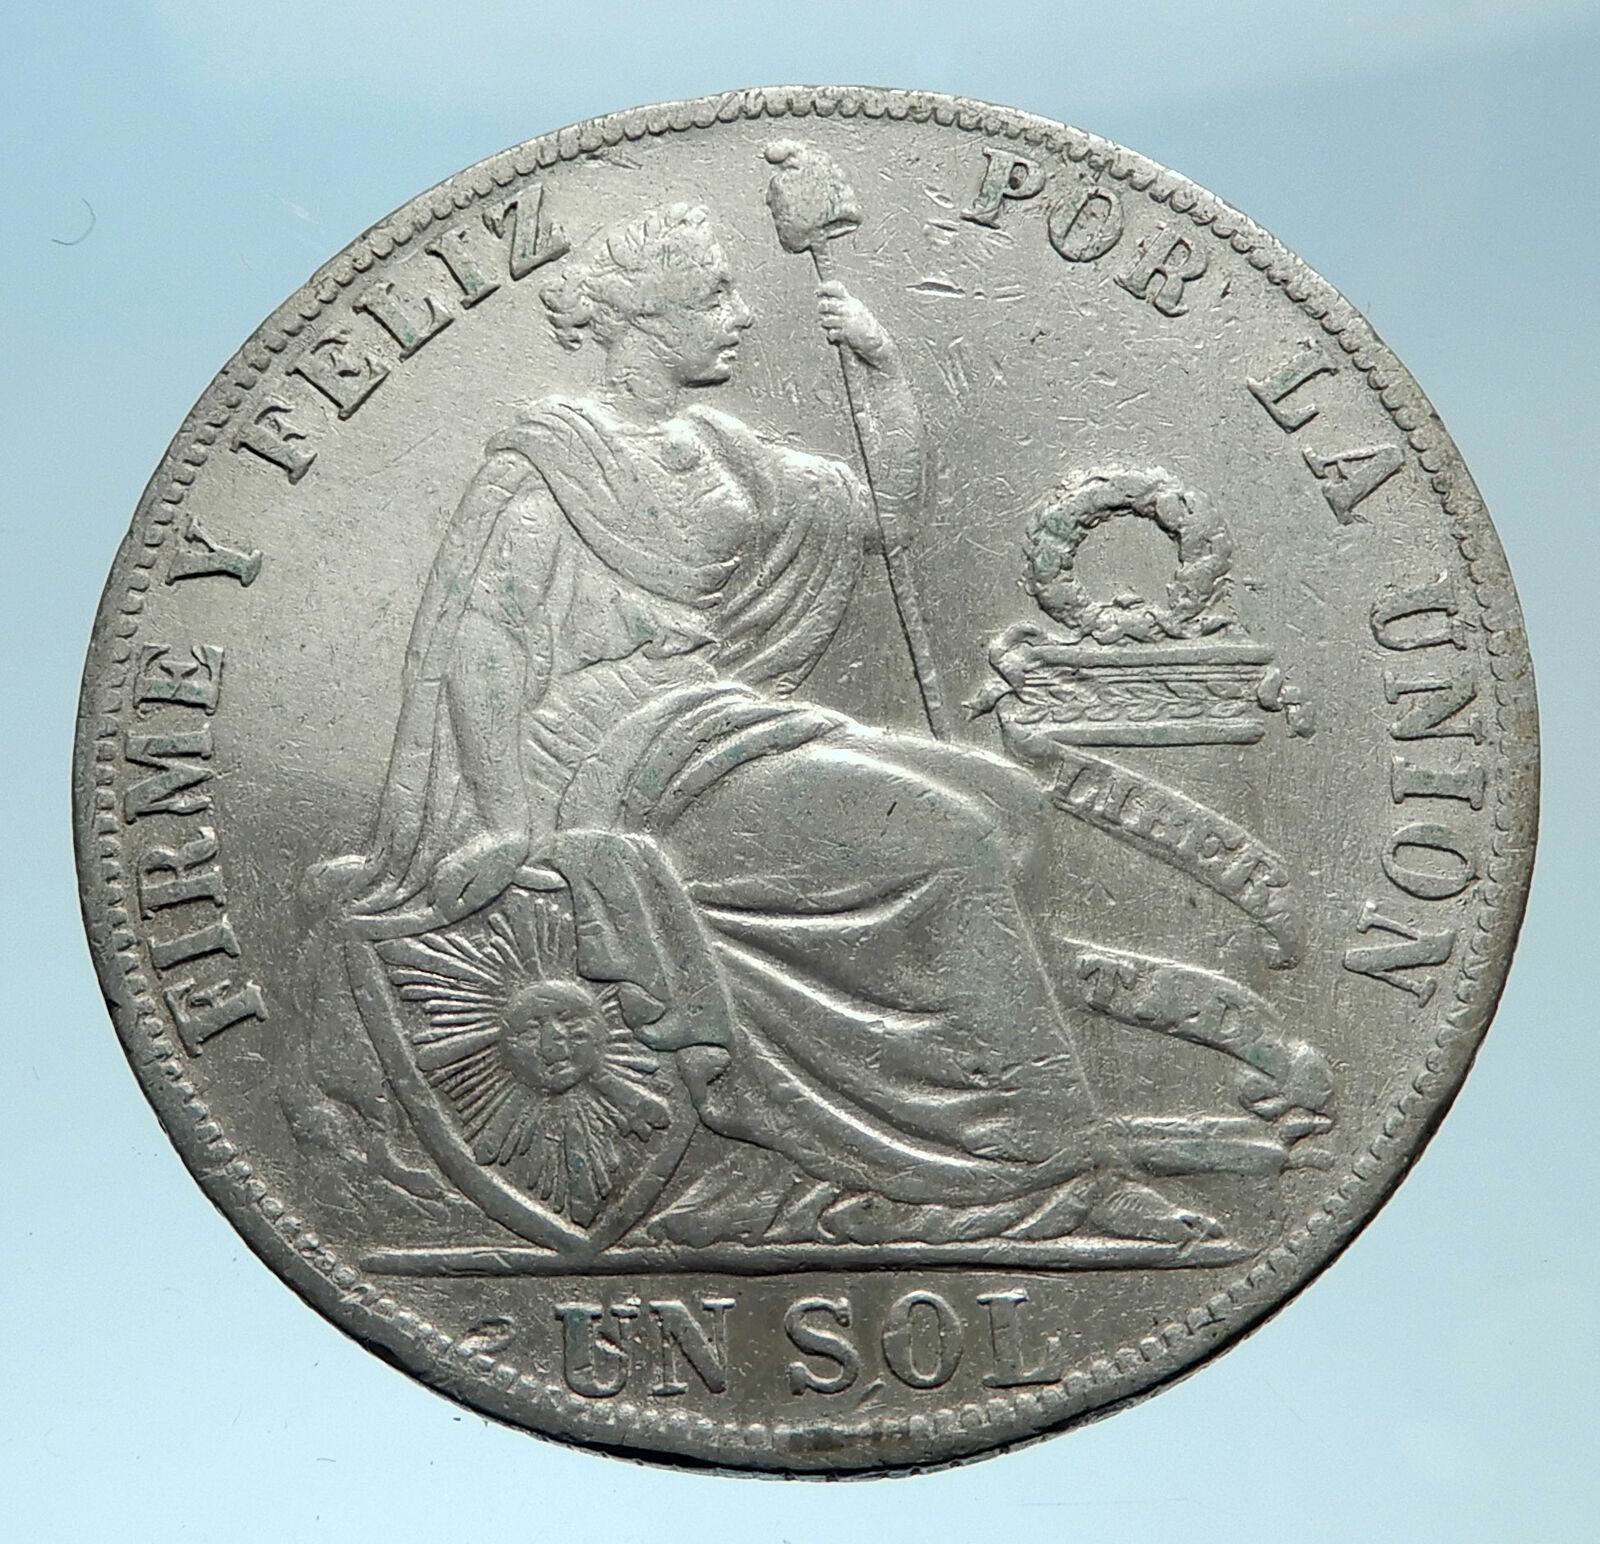 1892 PERU South America 1 SOL Antique BIG Original Silver Peruvian Coin i78219